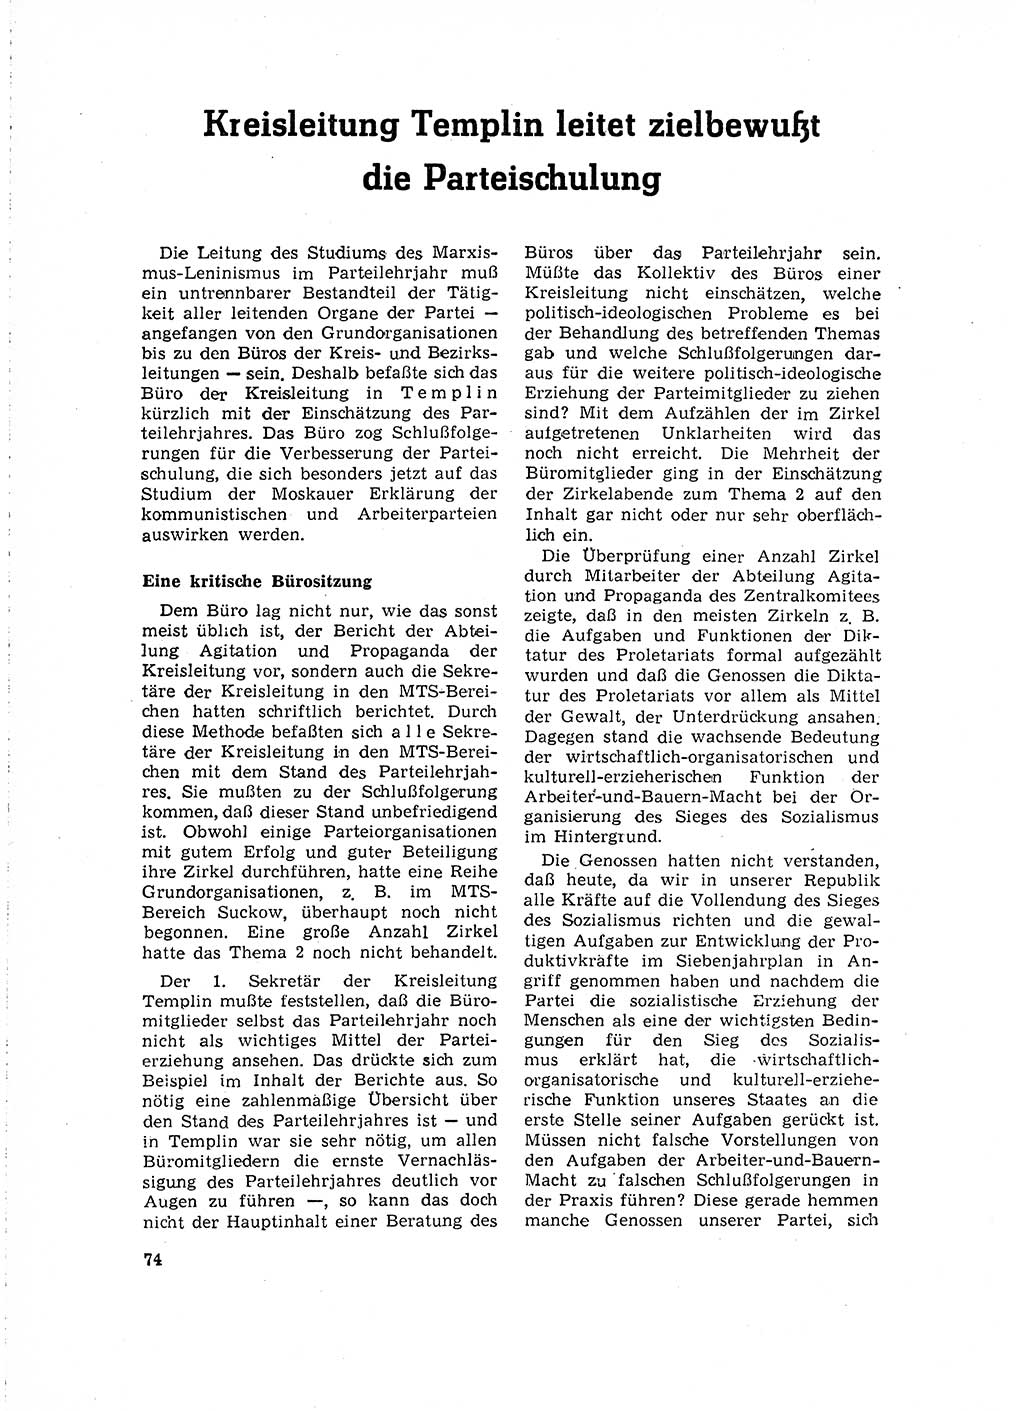 Neuer Weg (NW), Organ des Zentralkomitees (ZK) der SED (Sozialistische Einheitspartei Deutschlands) für Fragen des Parteilebens, 16. Jahrgang [Deutsche Demokratische Republik (DDR)] 1961, Seite 74 (NW ZK SED DDR 1961, S. 74)